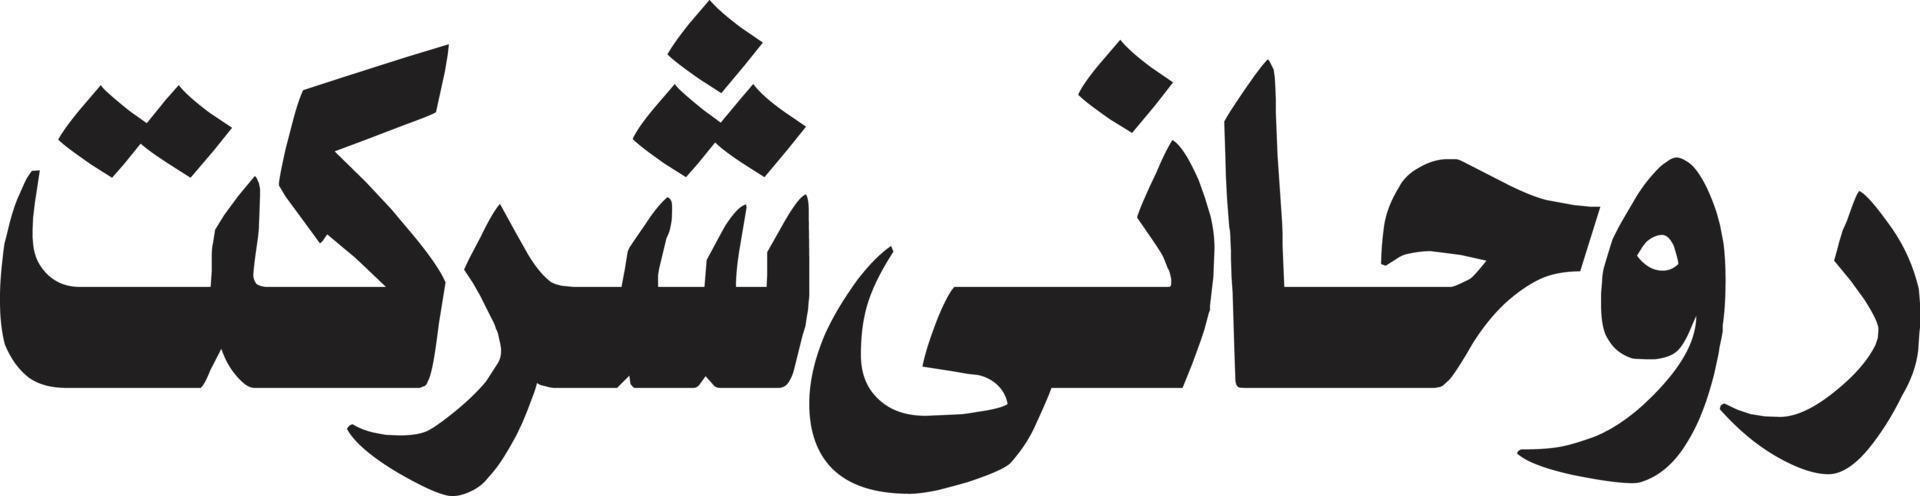 vecteur gratuit de calligraphie islamique rohani sherkat